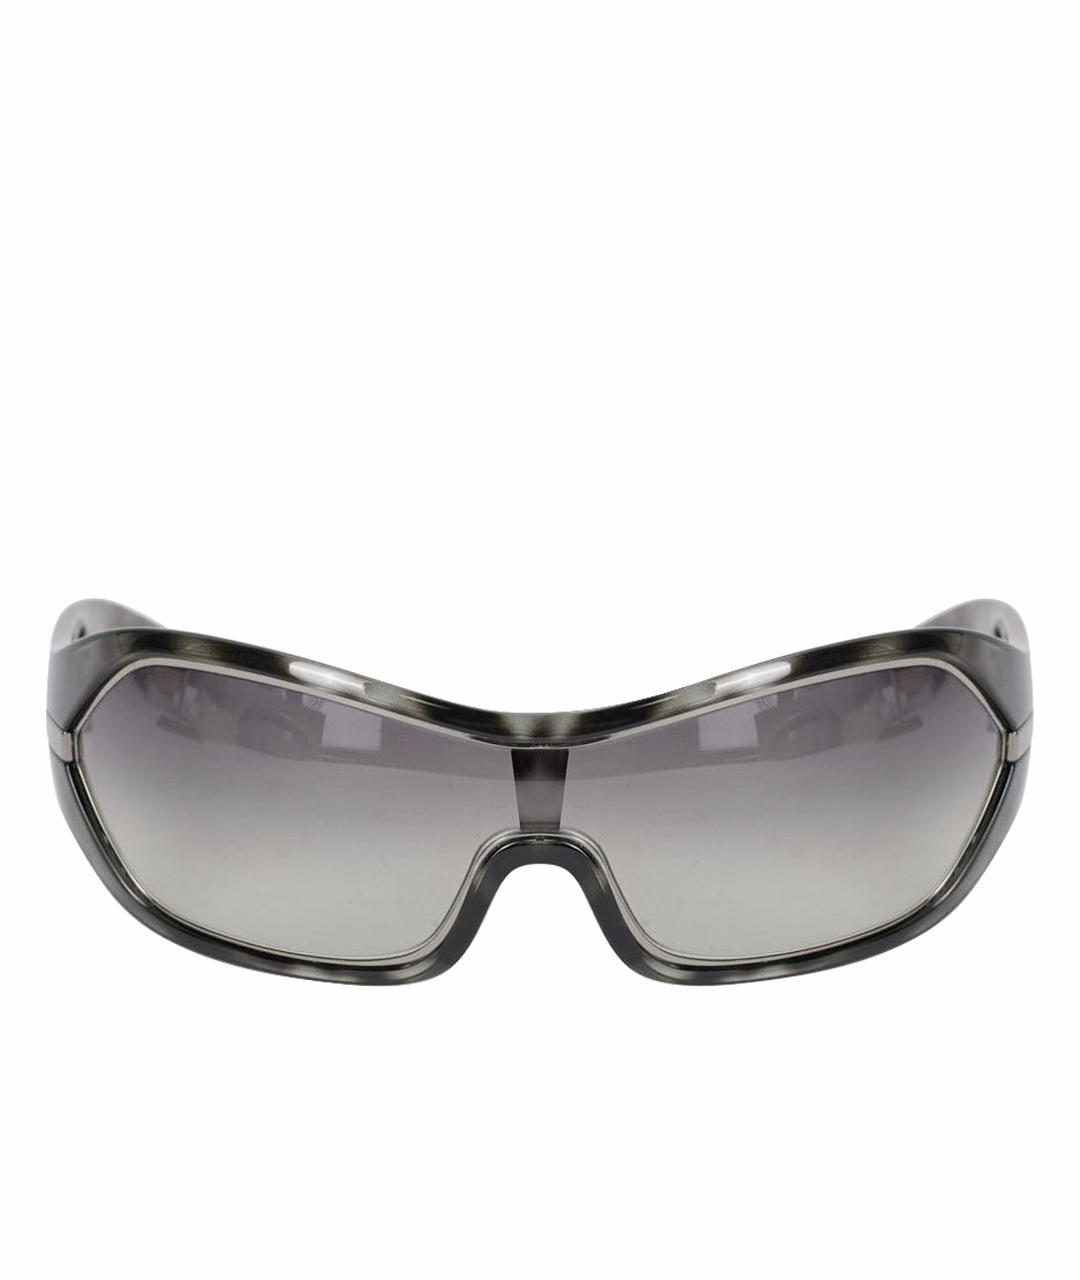 PRADA Серые пластиковые солнцезащитные очки, фото 1